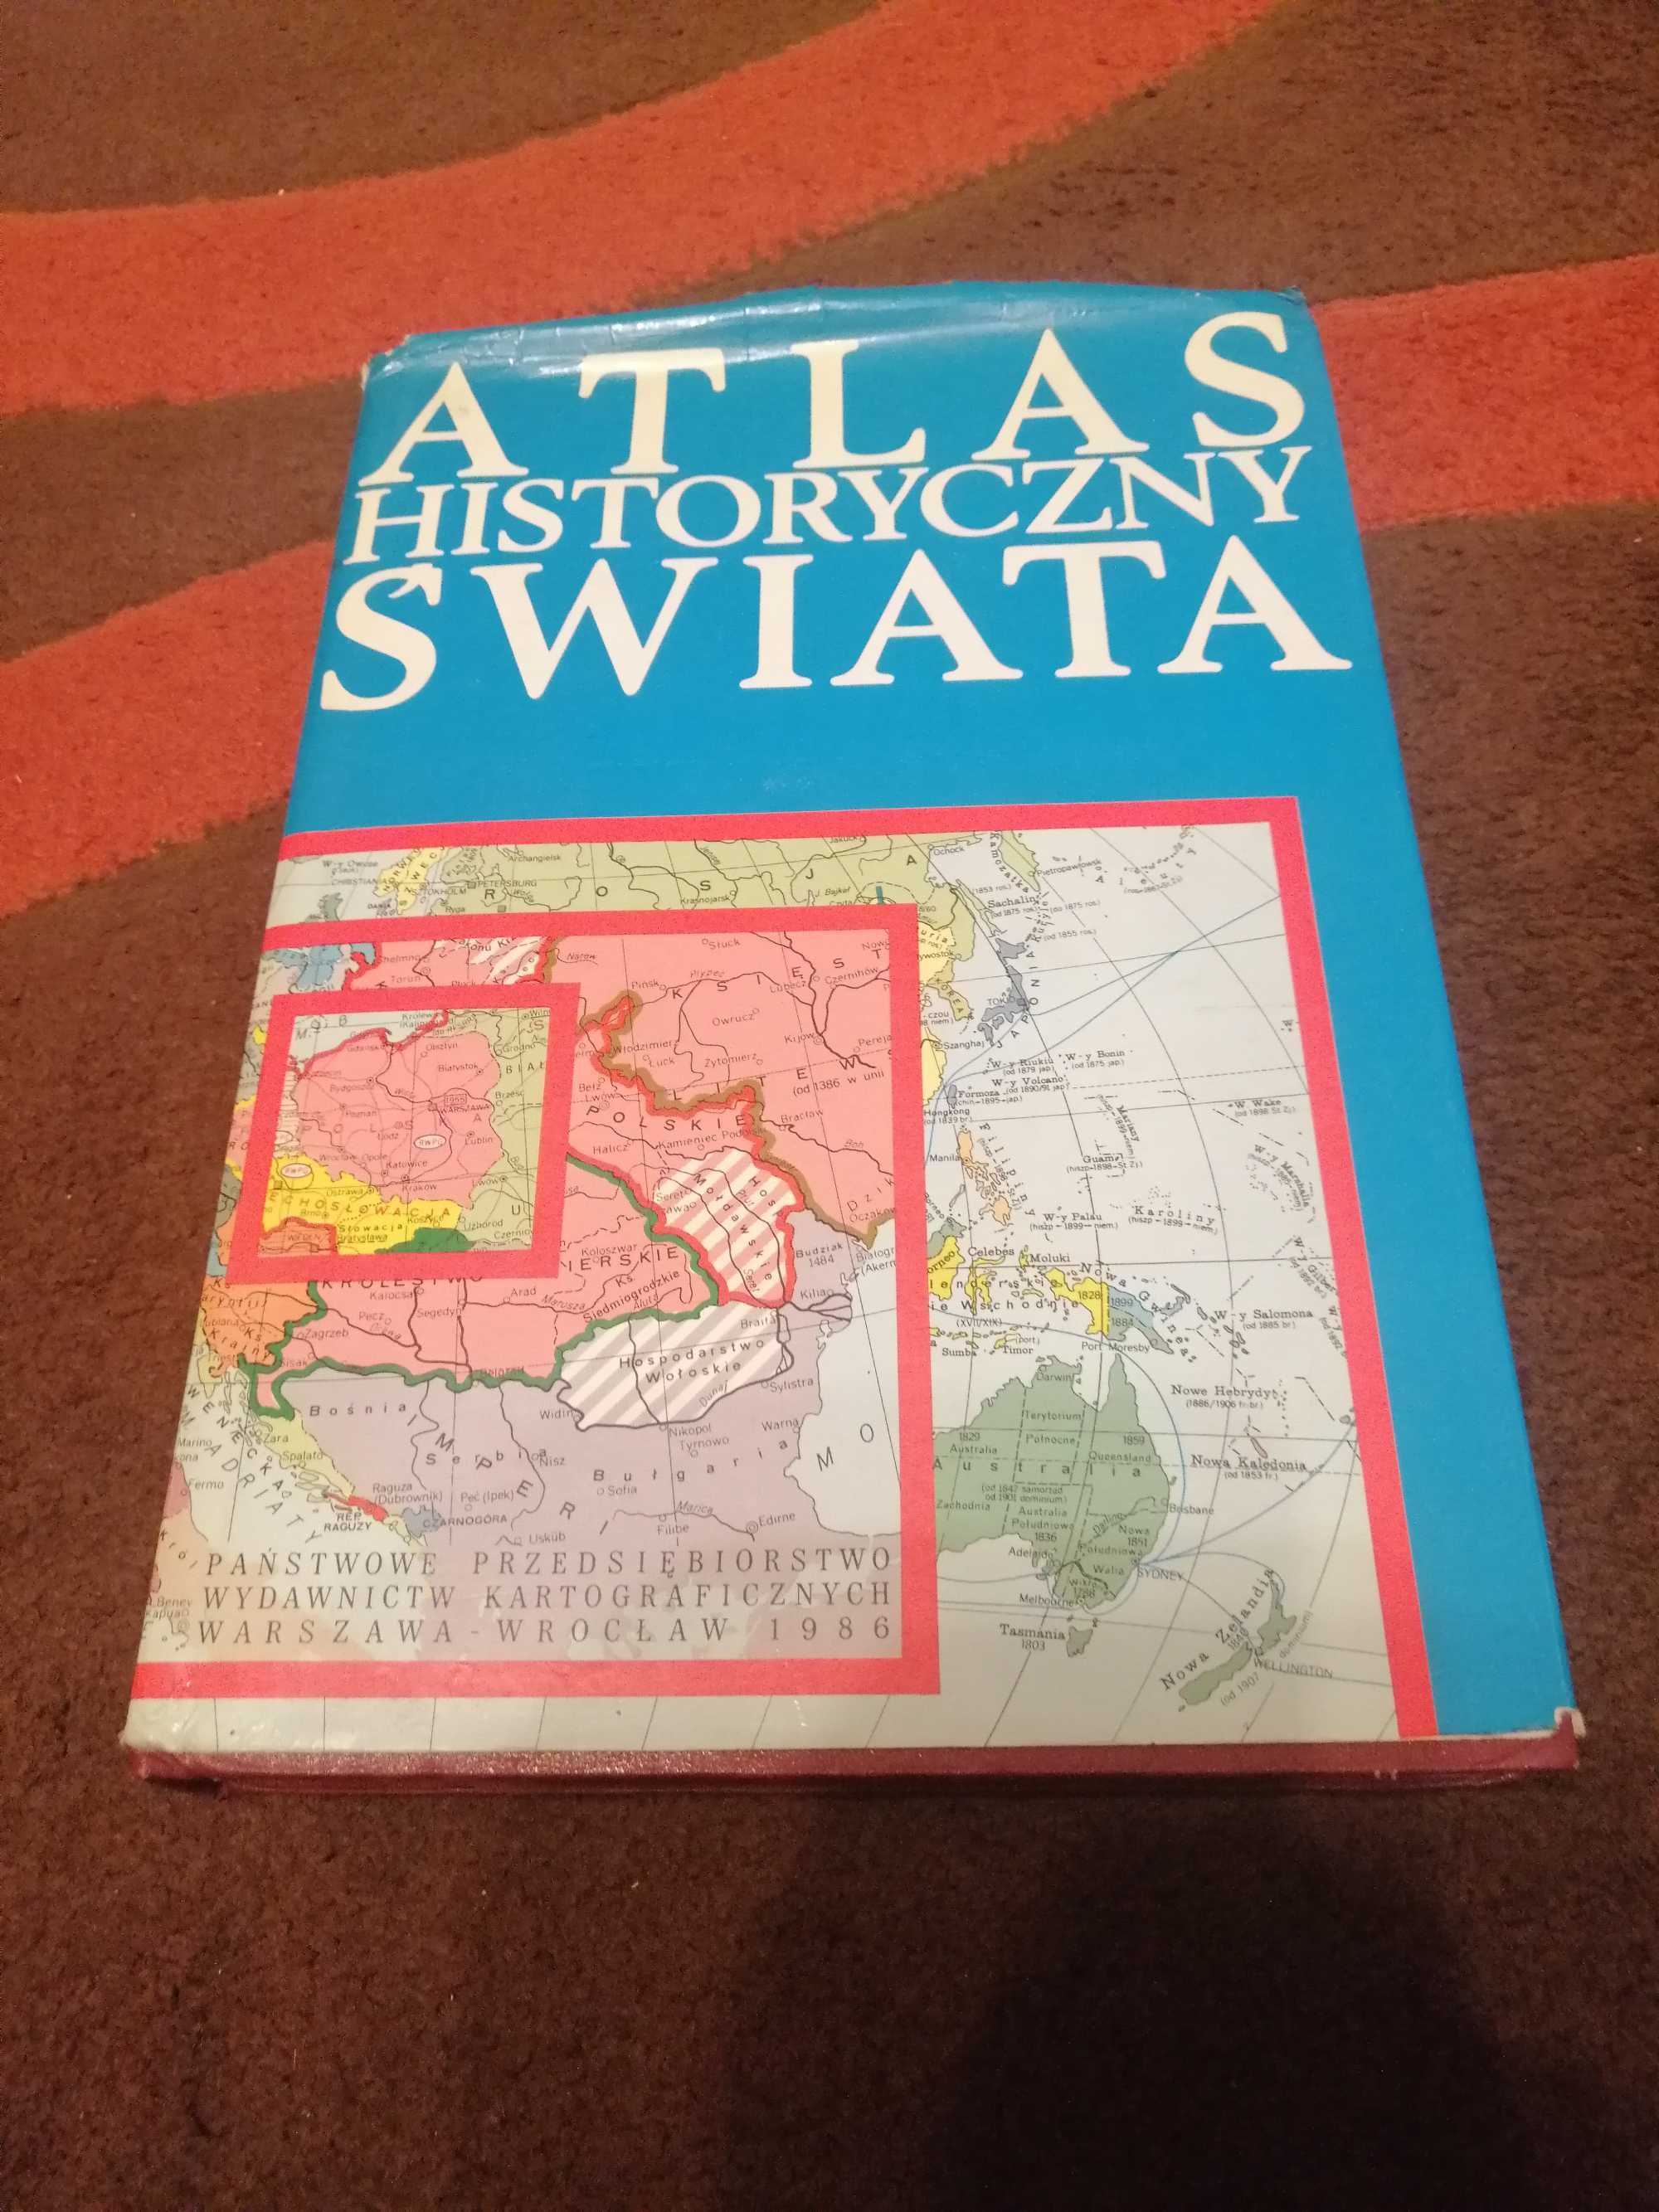 Atlas historyczny świata. PPWK